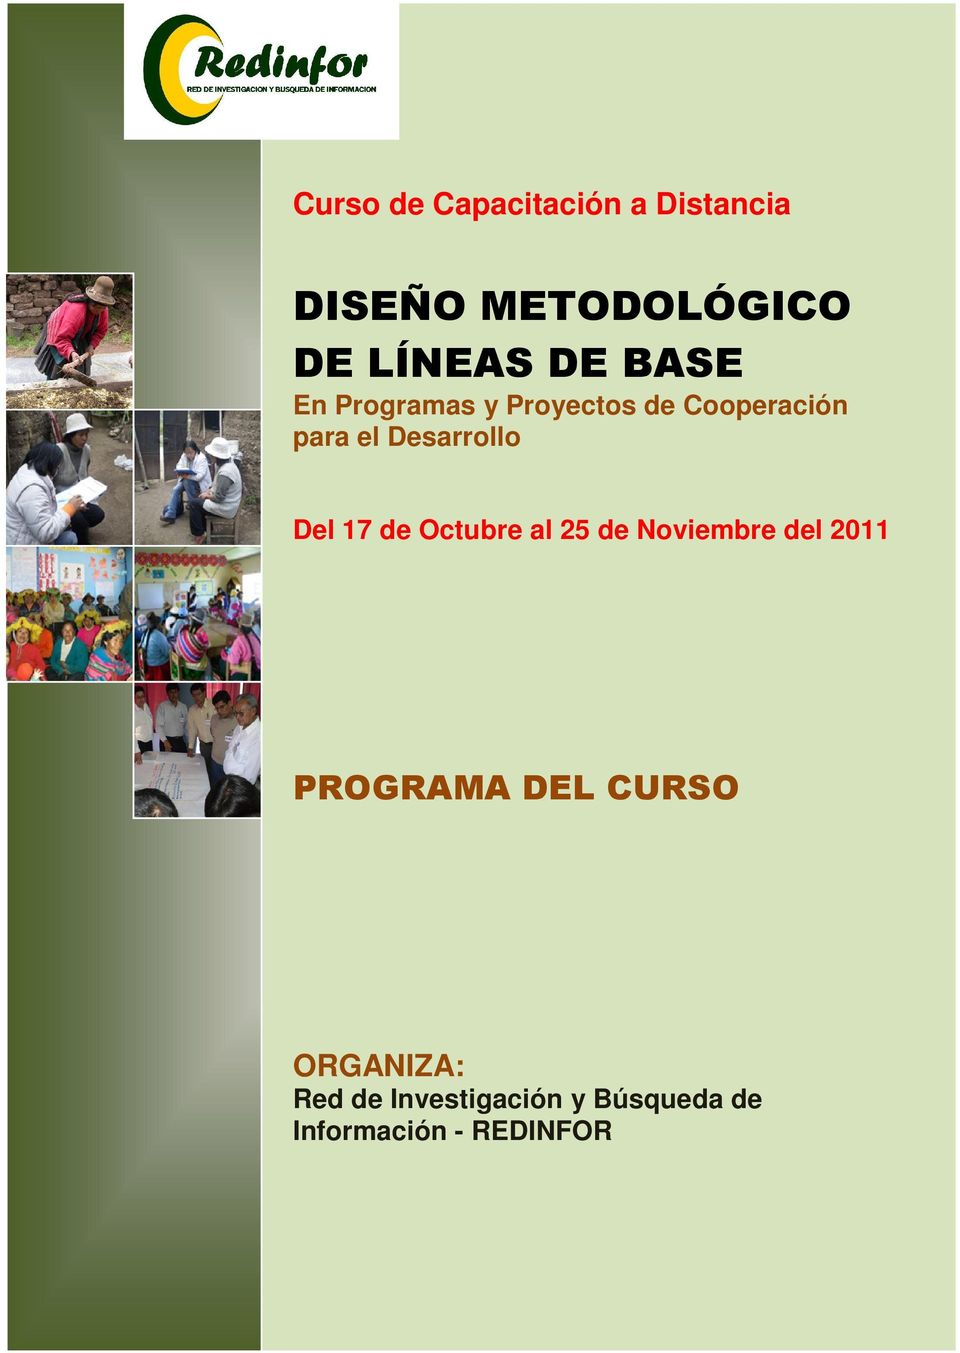 Octubre al 25 de del 2011 PROGRAMA DEL CURSO ORGANIZA: Red de